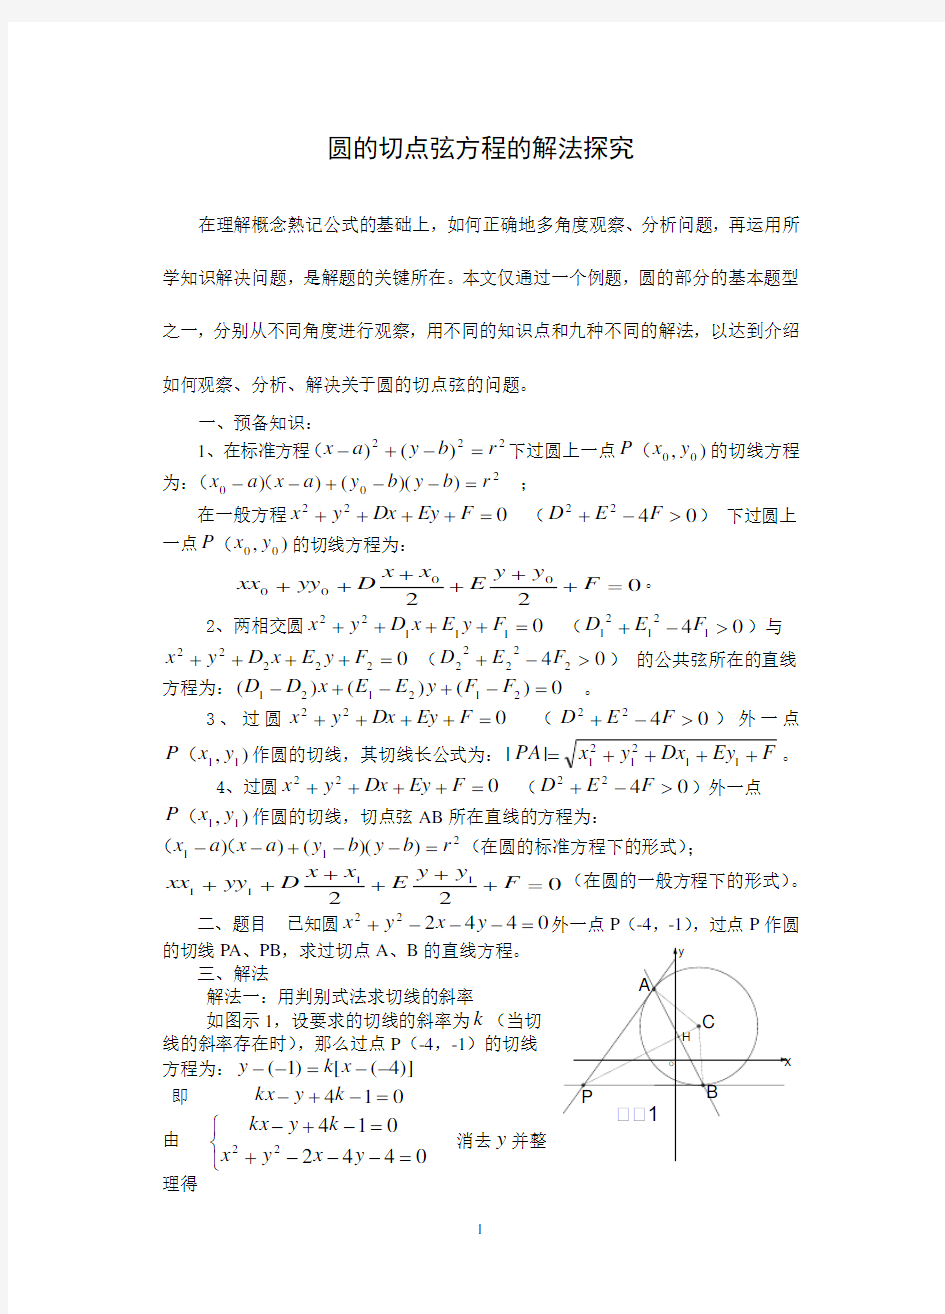 (完整版)圆的切点弦方程的九种求法-高中数学